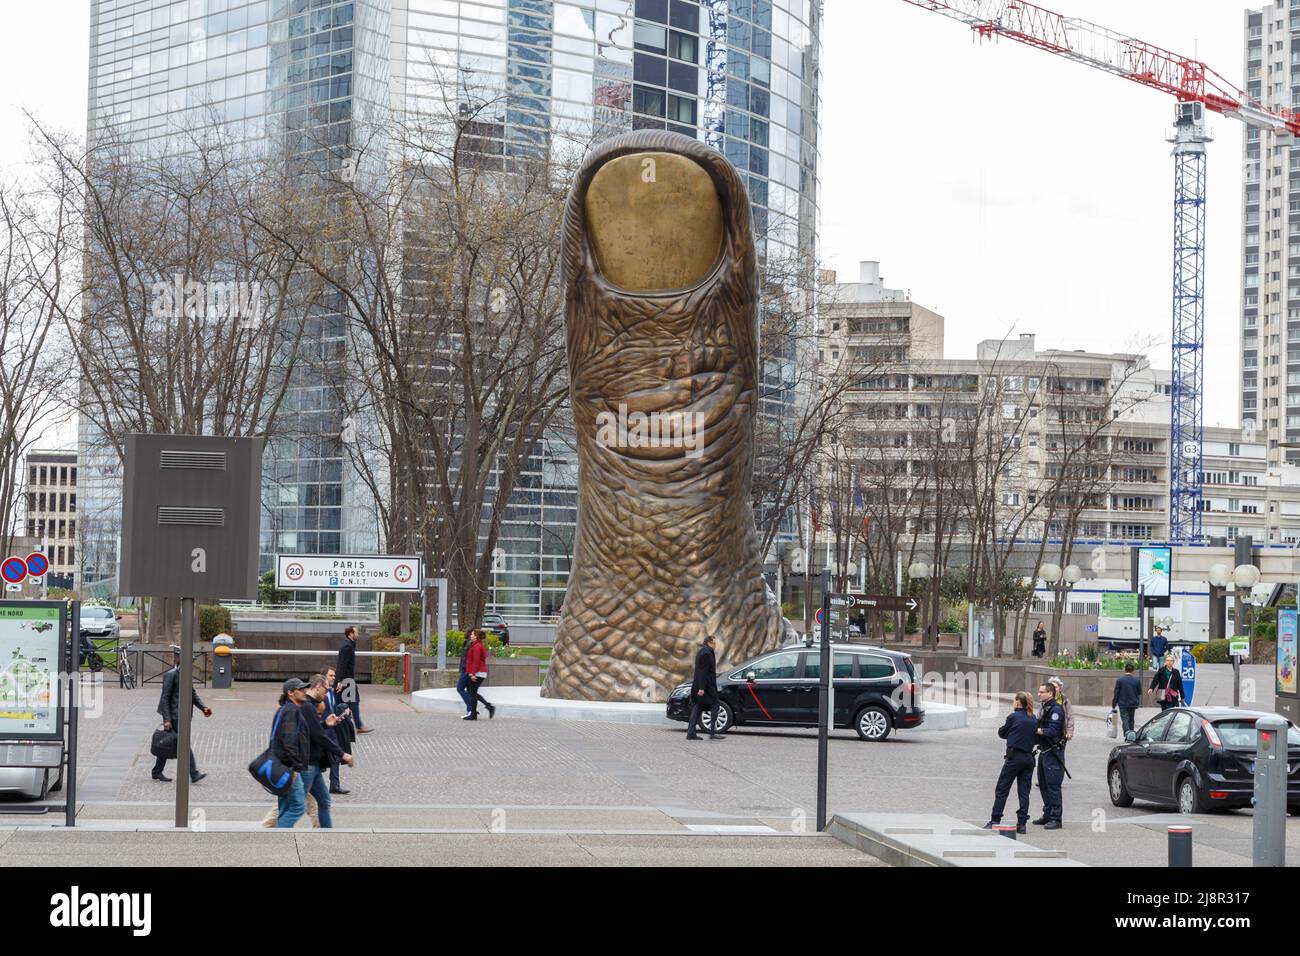 Paris, Frankreich, 30. März 2017: Große Finger oder riesige große Daumenskulptur oder Kunststatue in der Verteidigungslinie, in der Nähe des großen Bogens in Paris, Frankreich Stockfoto